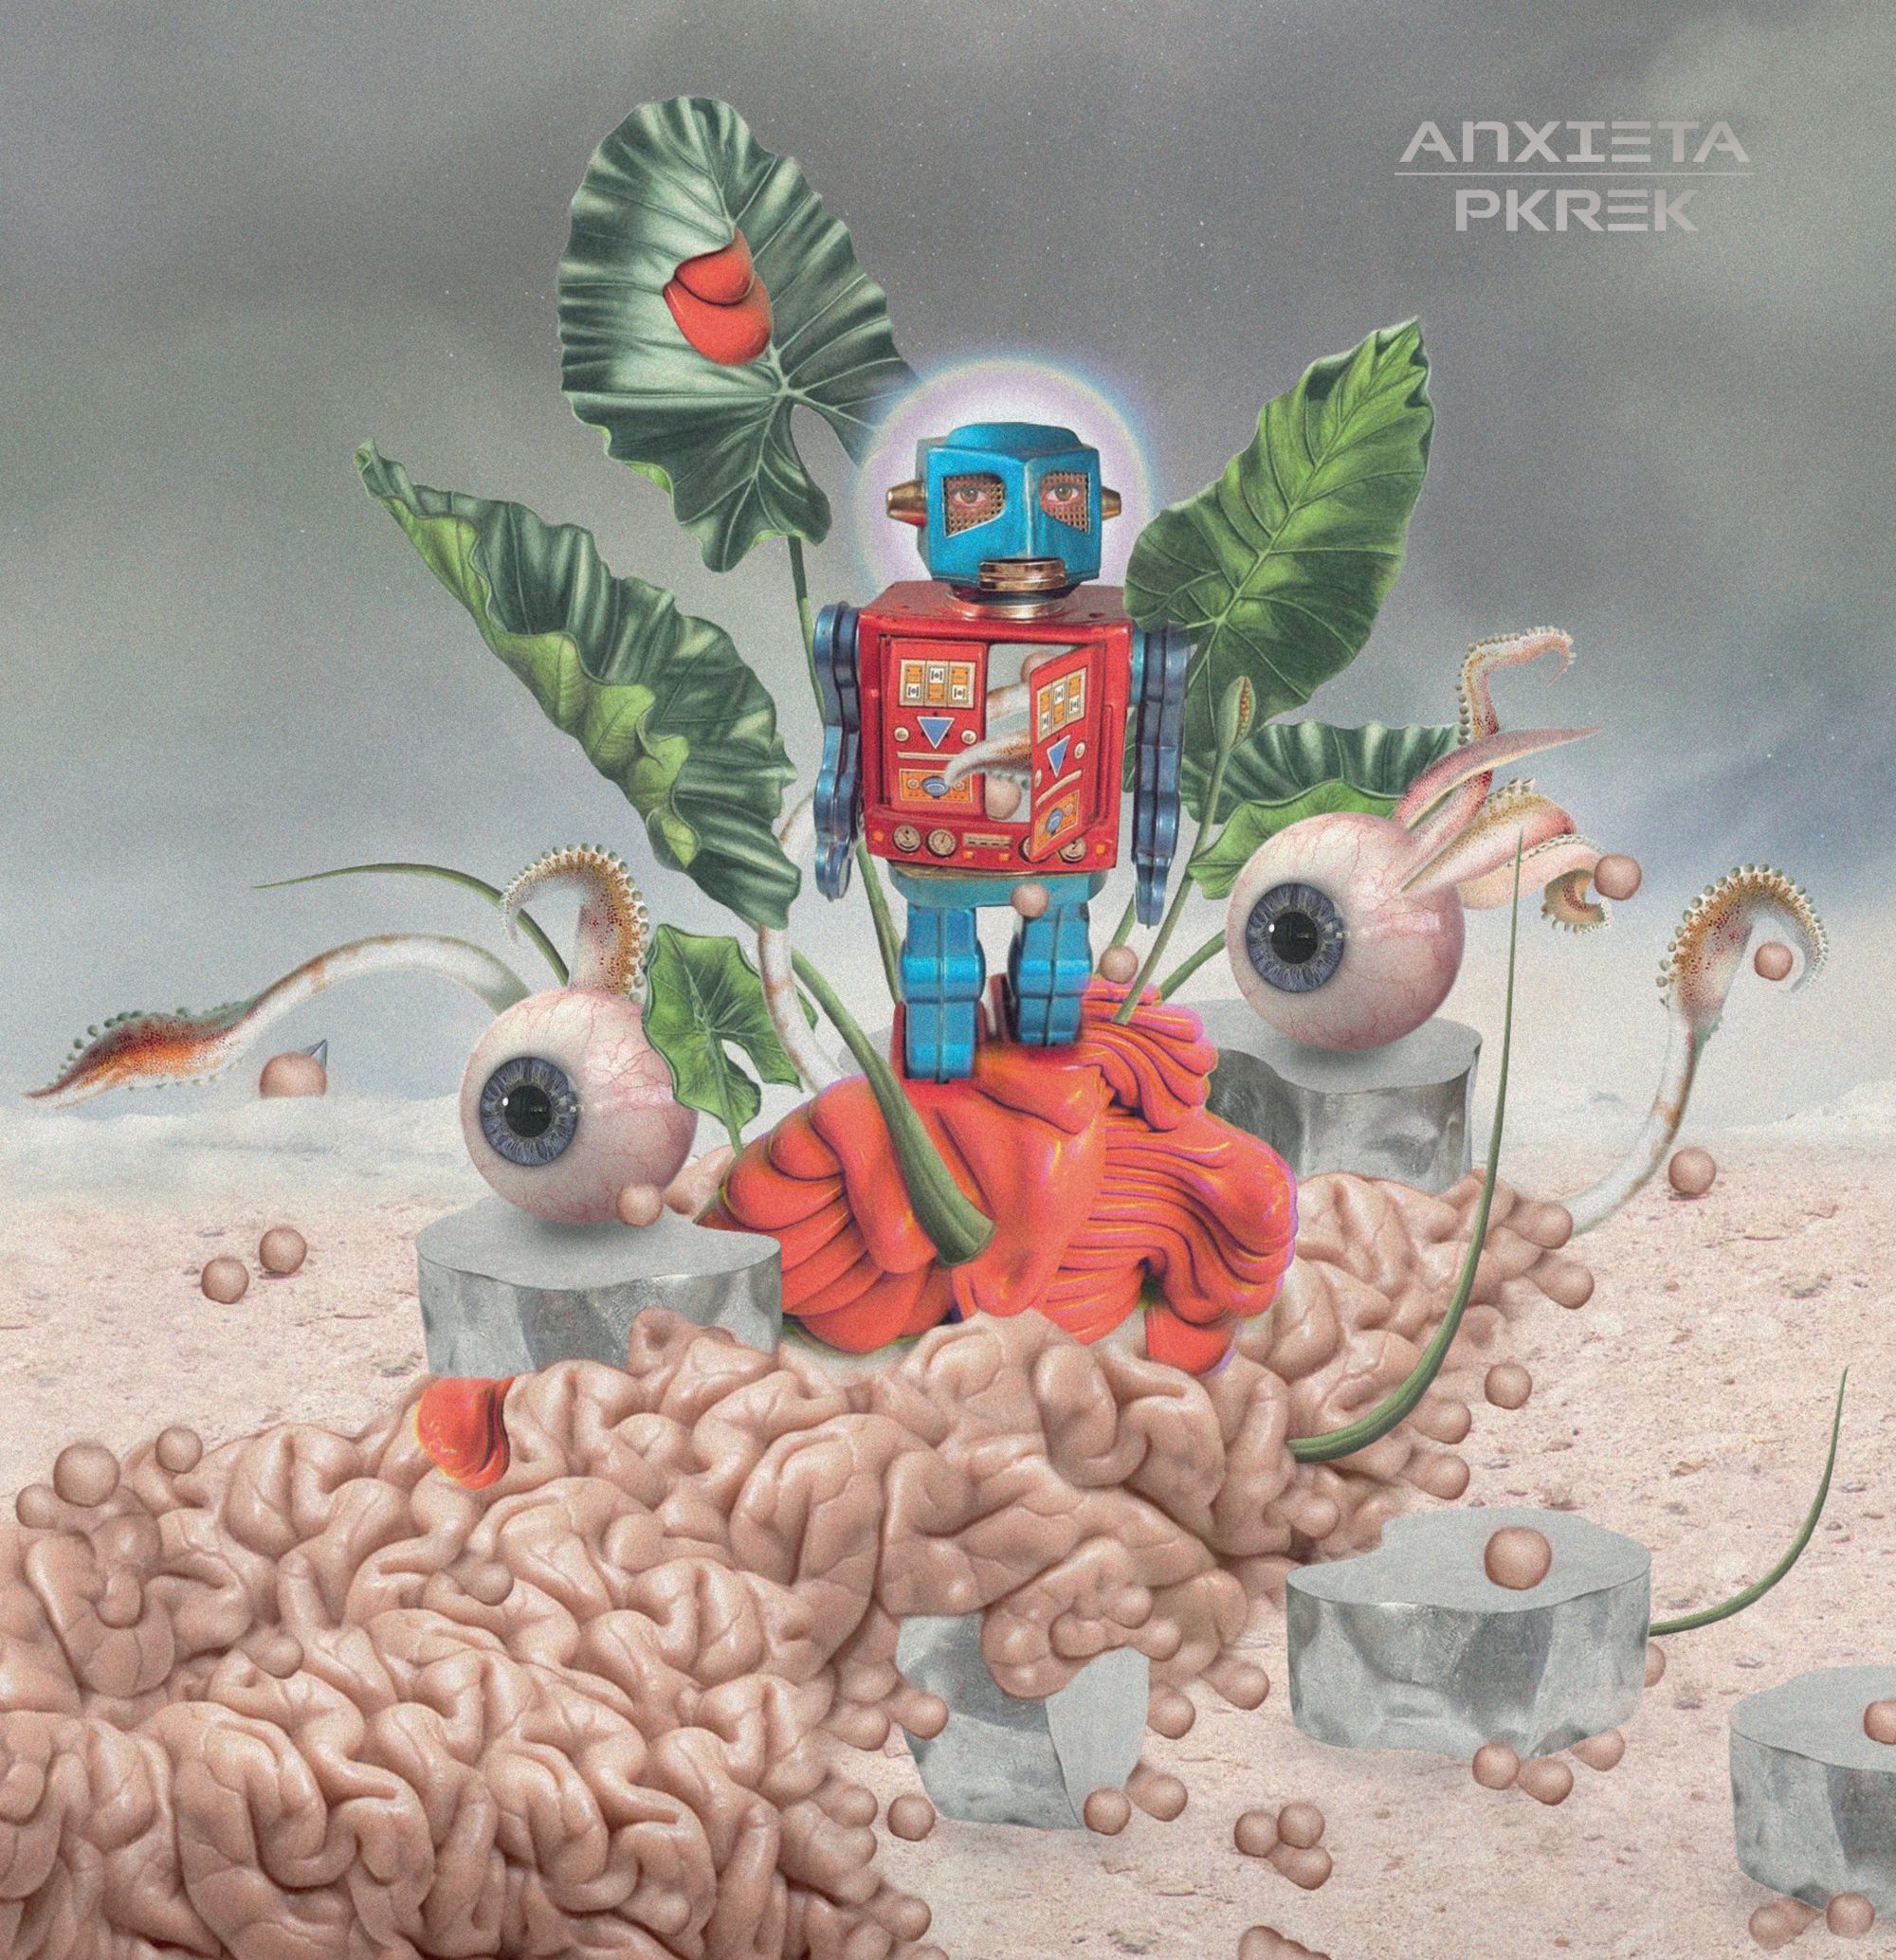 Anxieta (Pink With Red Splatter Vinyl)